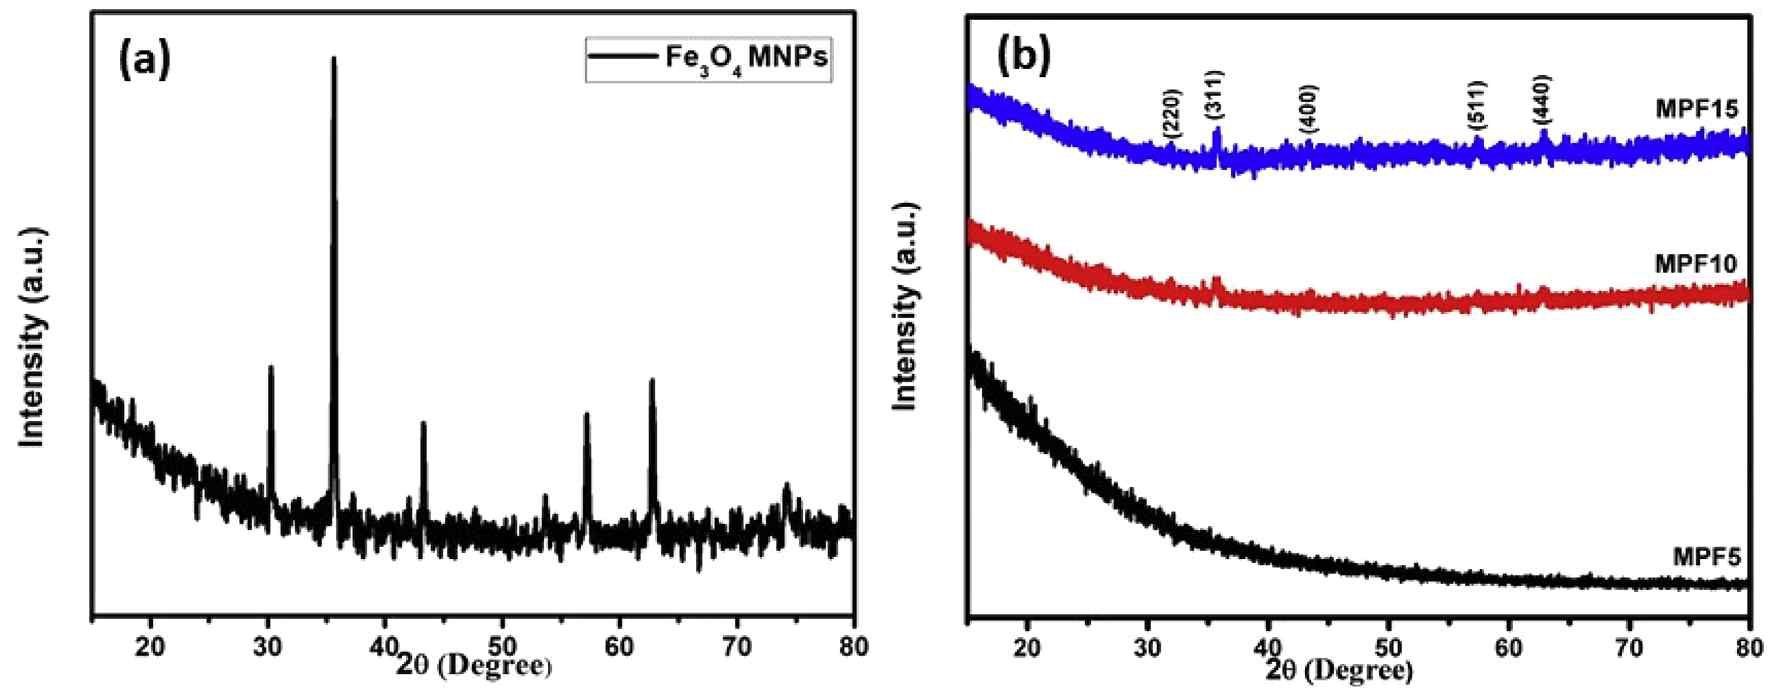 (a) Fe3O4 나노입자 및 (b) 함량별 MPF 복합 기공구조체의 XRD 분석 결과